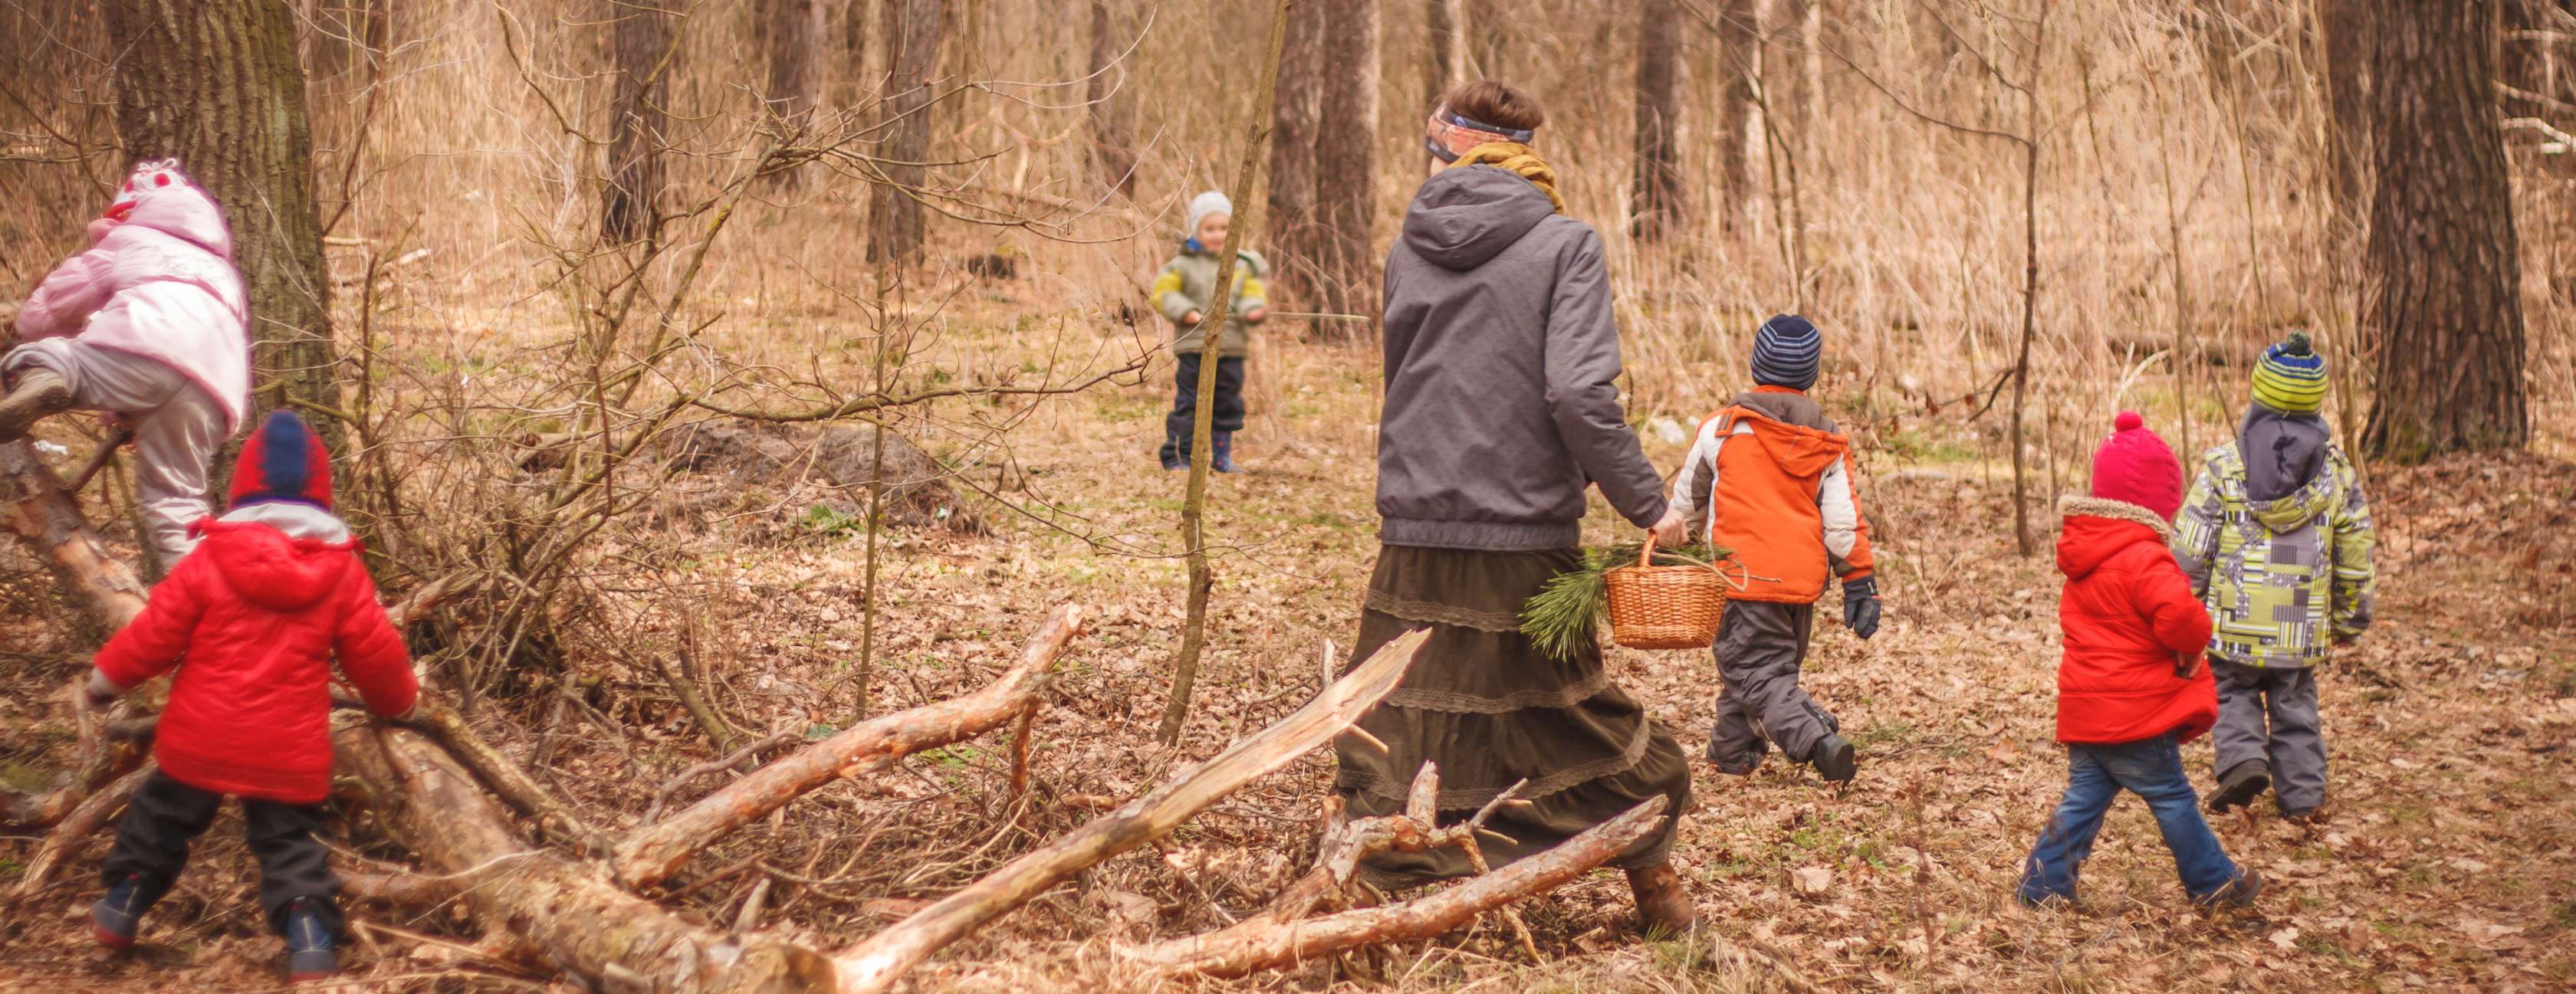 Eine Kindergärtnerin spaziert mit Kindern durch einen Wald und sammelt Naturmaterialien.